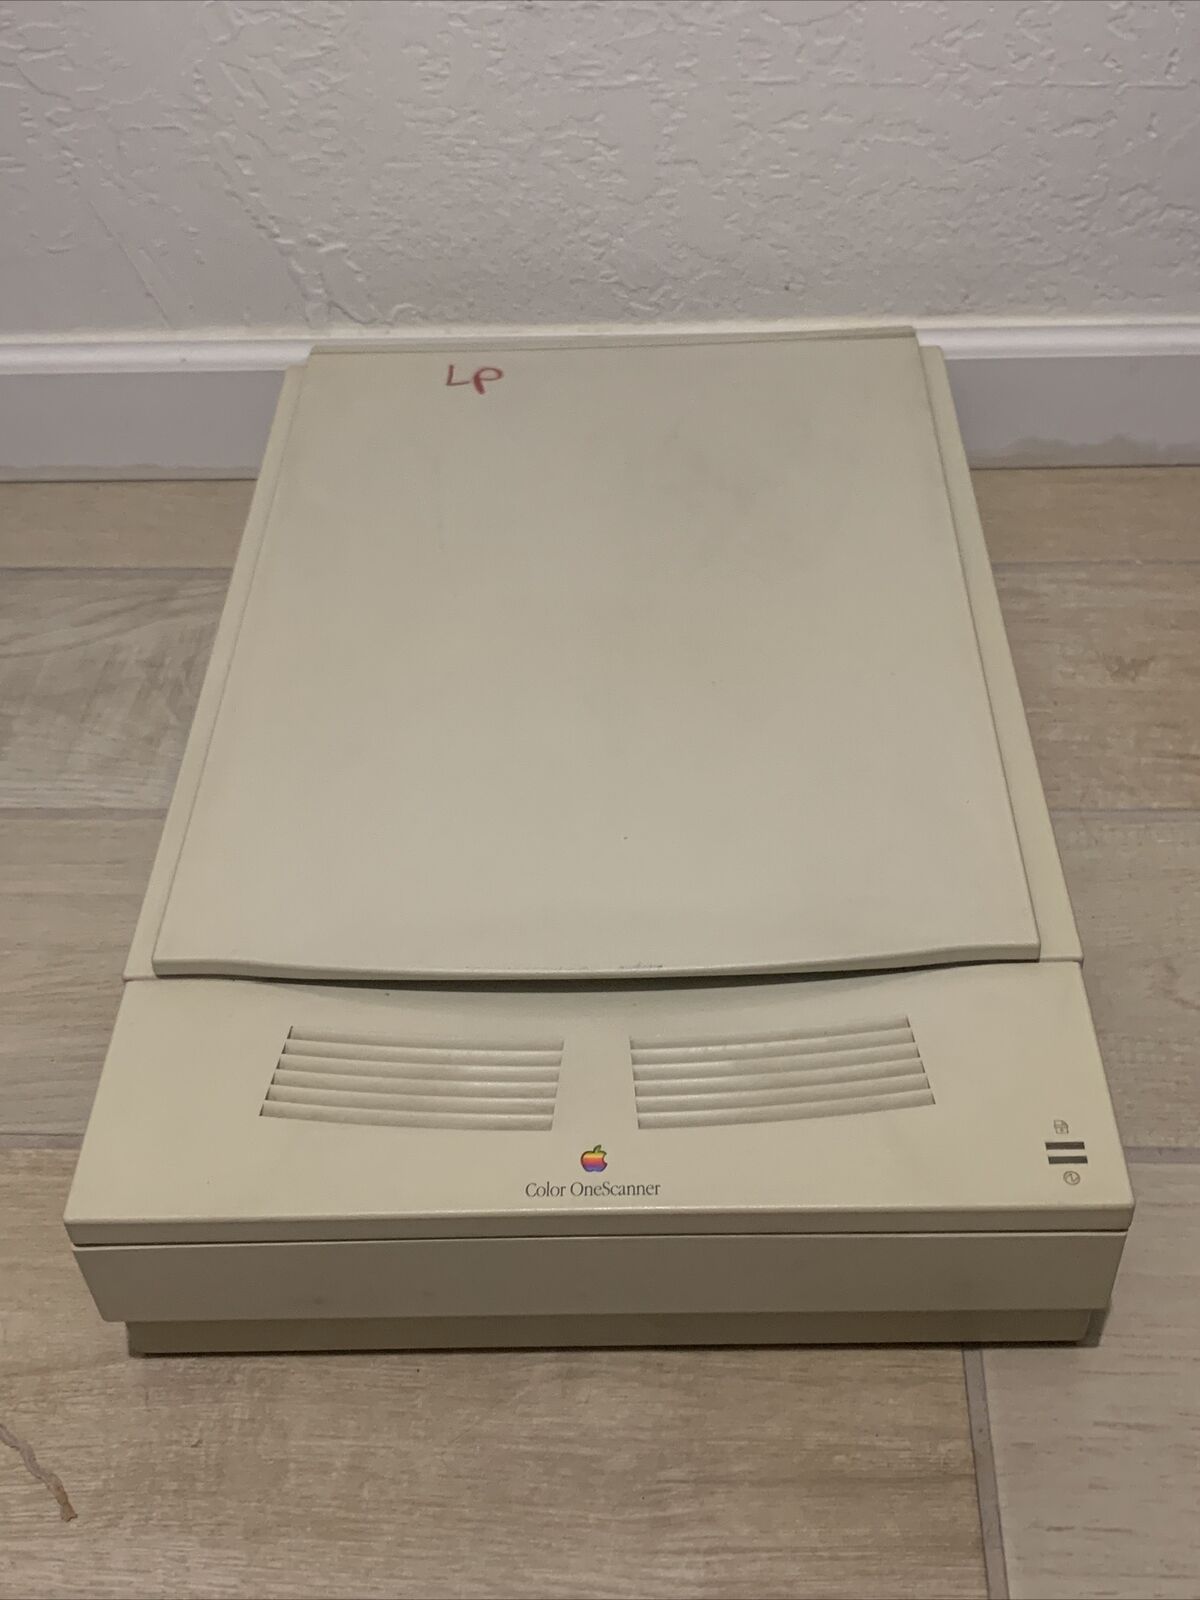 Apple Color OneScanner M5813 1200DPI SCSI Computer Document Scanner - FOR PARTS